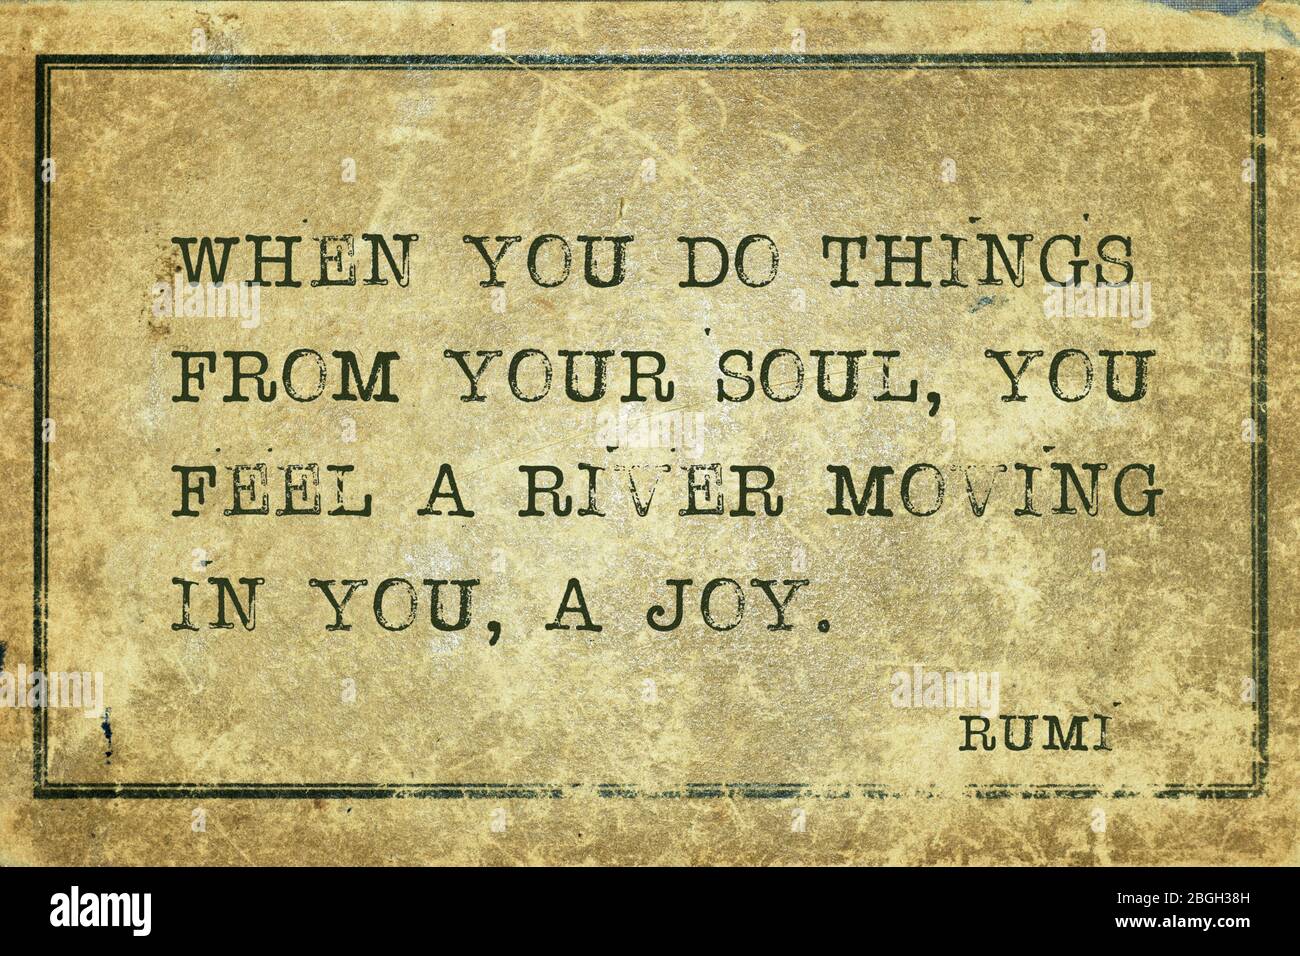 Wenn Sie Dinge von Ihrer Seele tun, fühlen Sie einen Fluss in Ihnen bewegen, eine Freude - alten persischen Dichter und Philosoph Rumi Zitat gedruckt auf grunge Jahrgang c Stockfoto